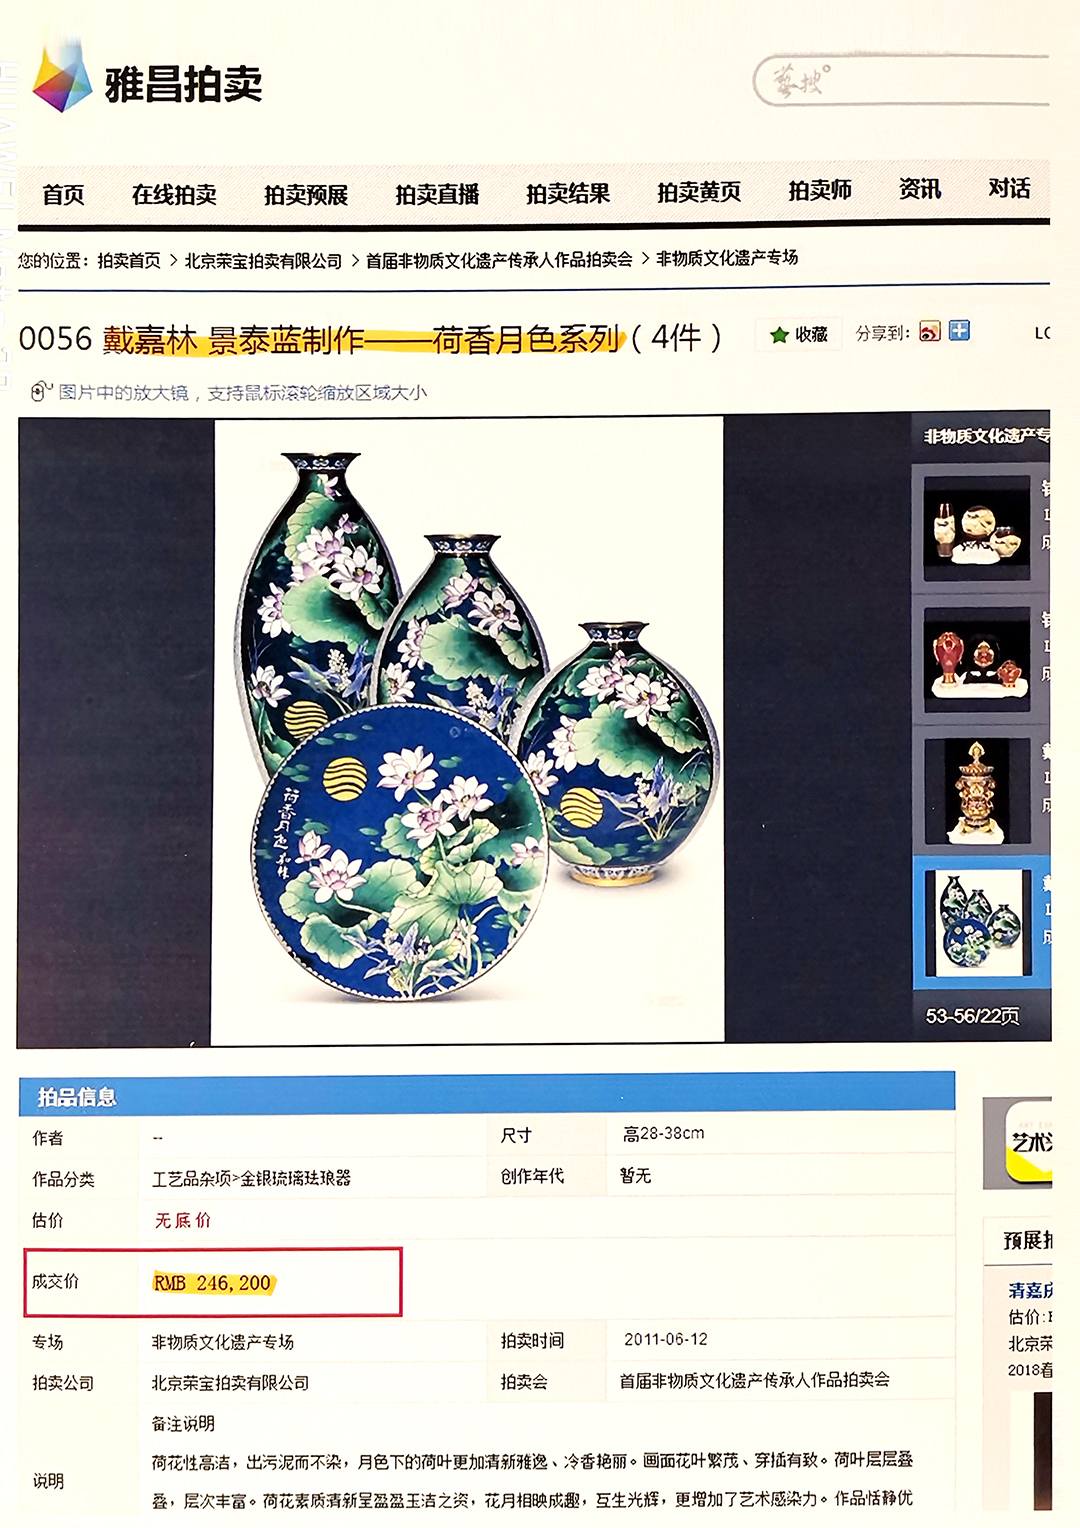 戴嘉林大师作品2011年雅昌拍卖　景泰蓝的价格.jpg